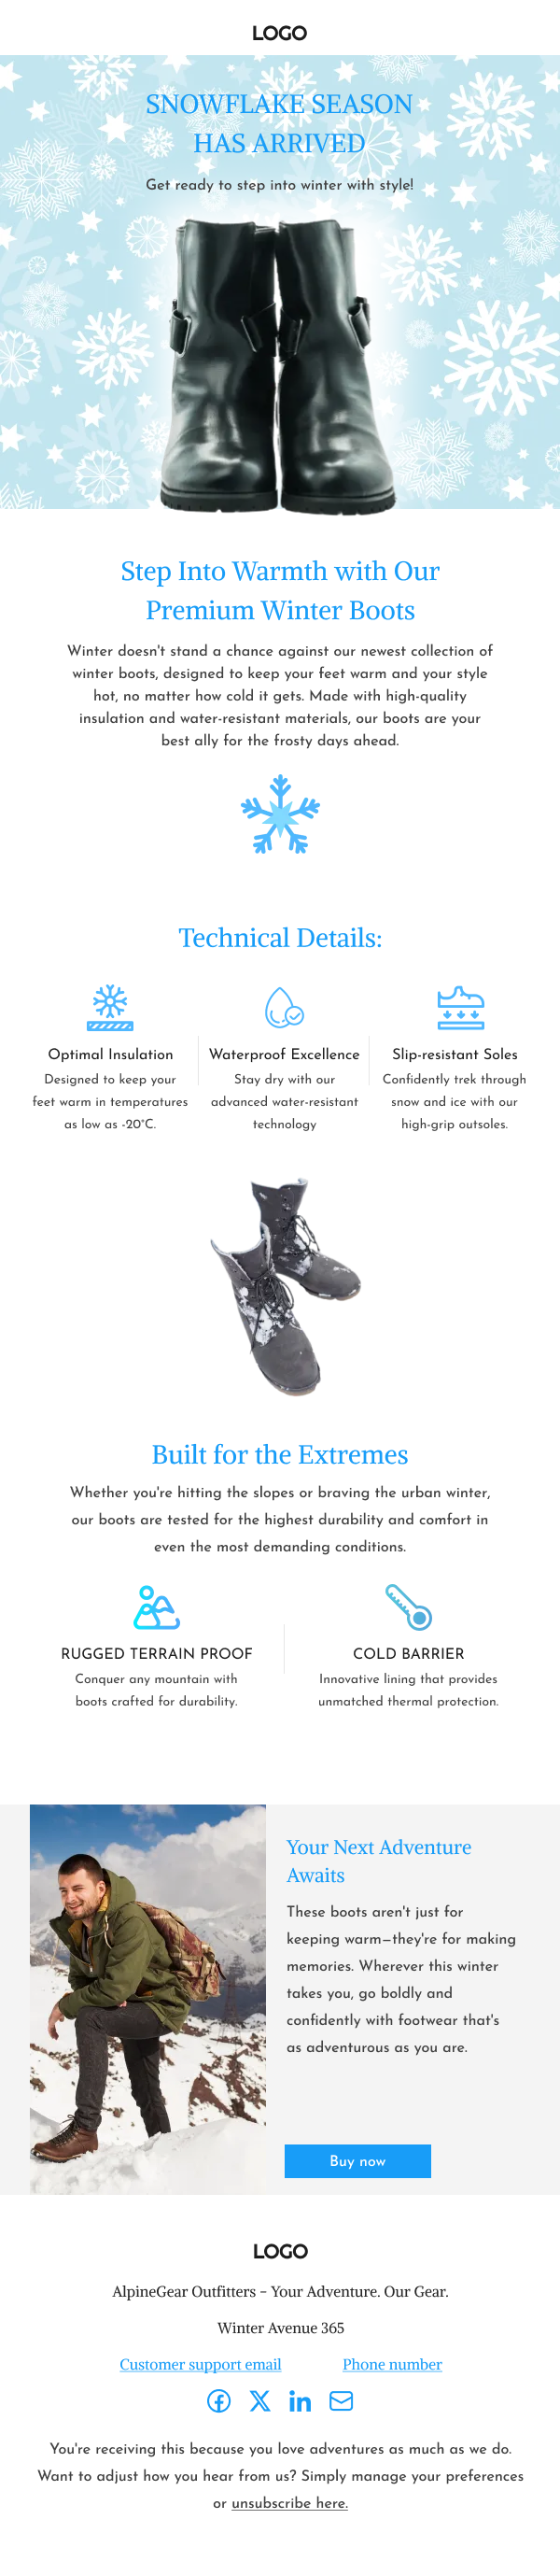 Fashion-Premium Winter Boots